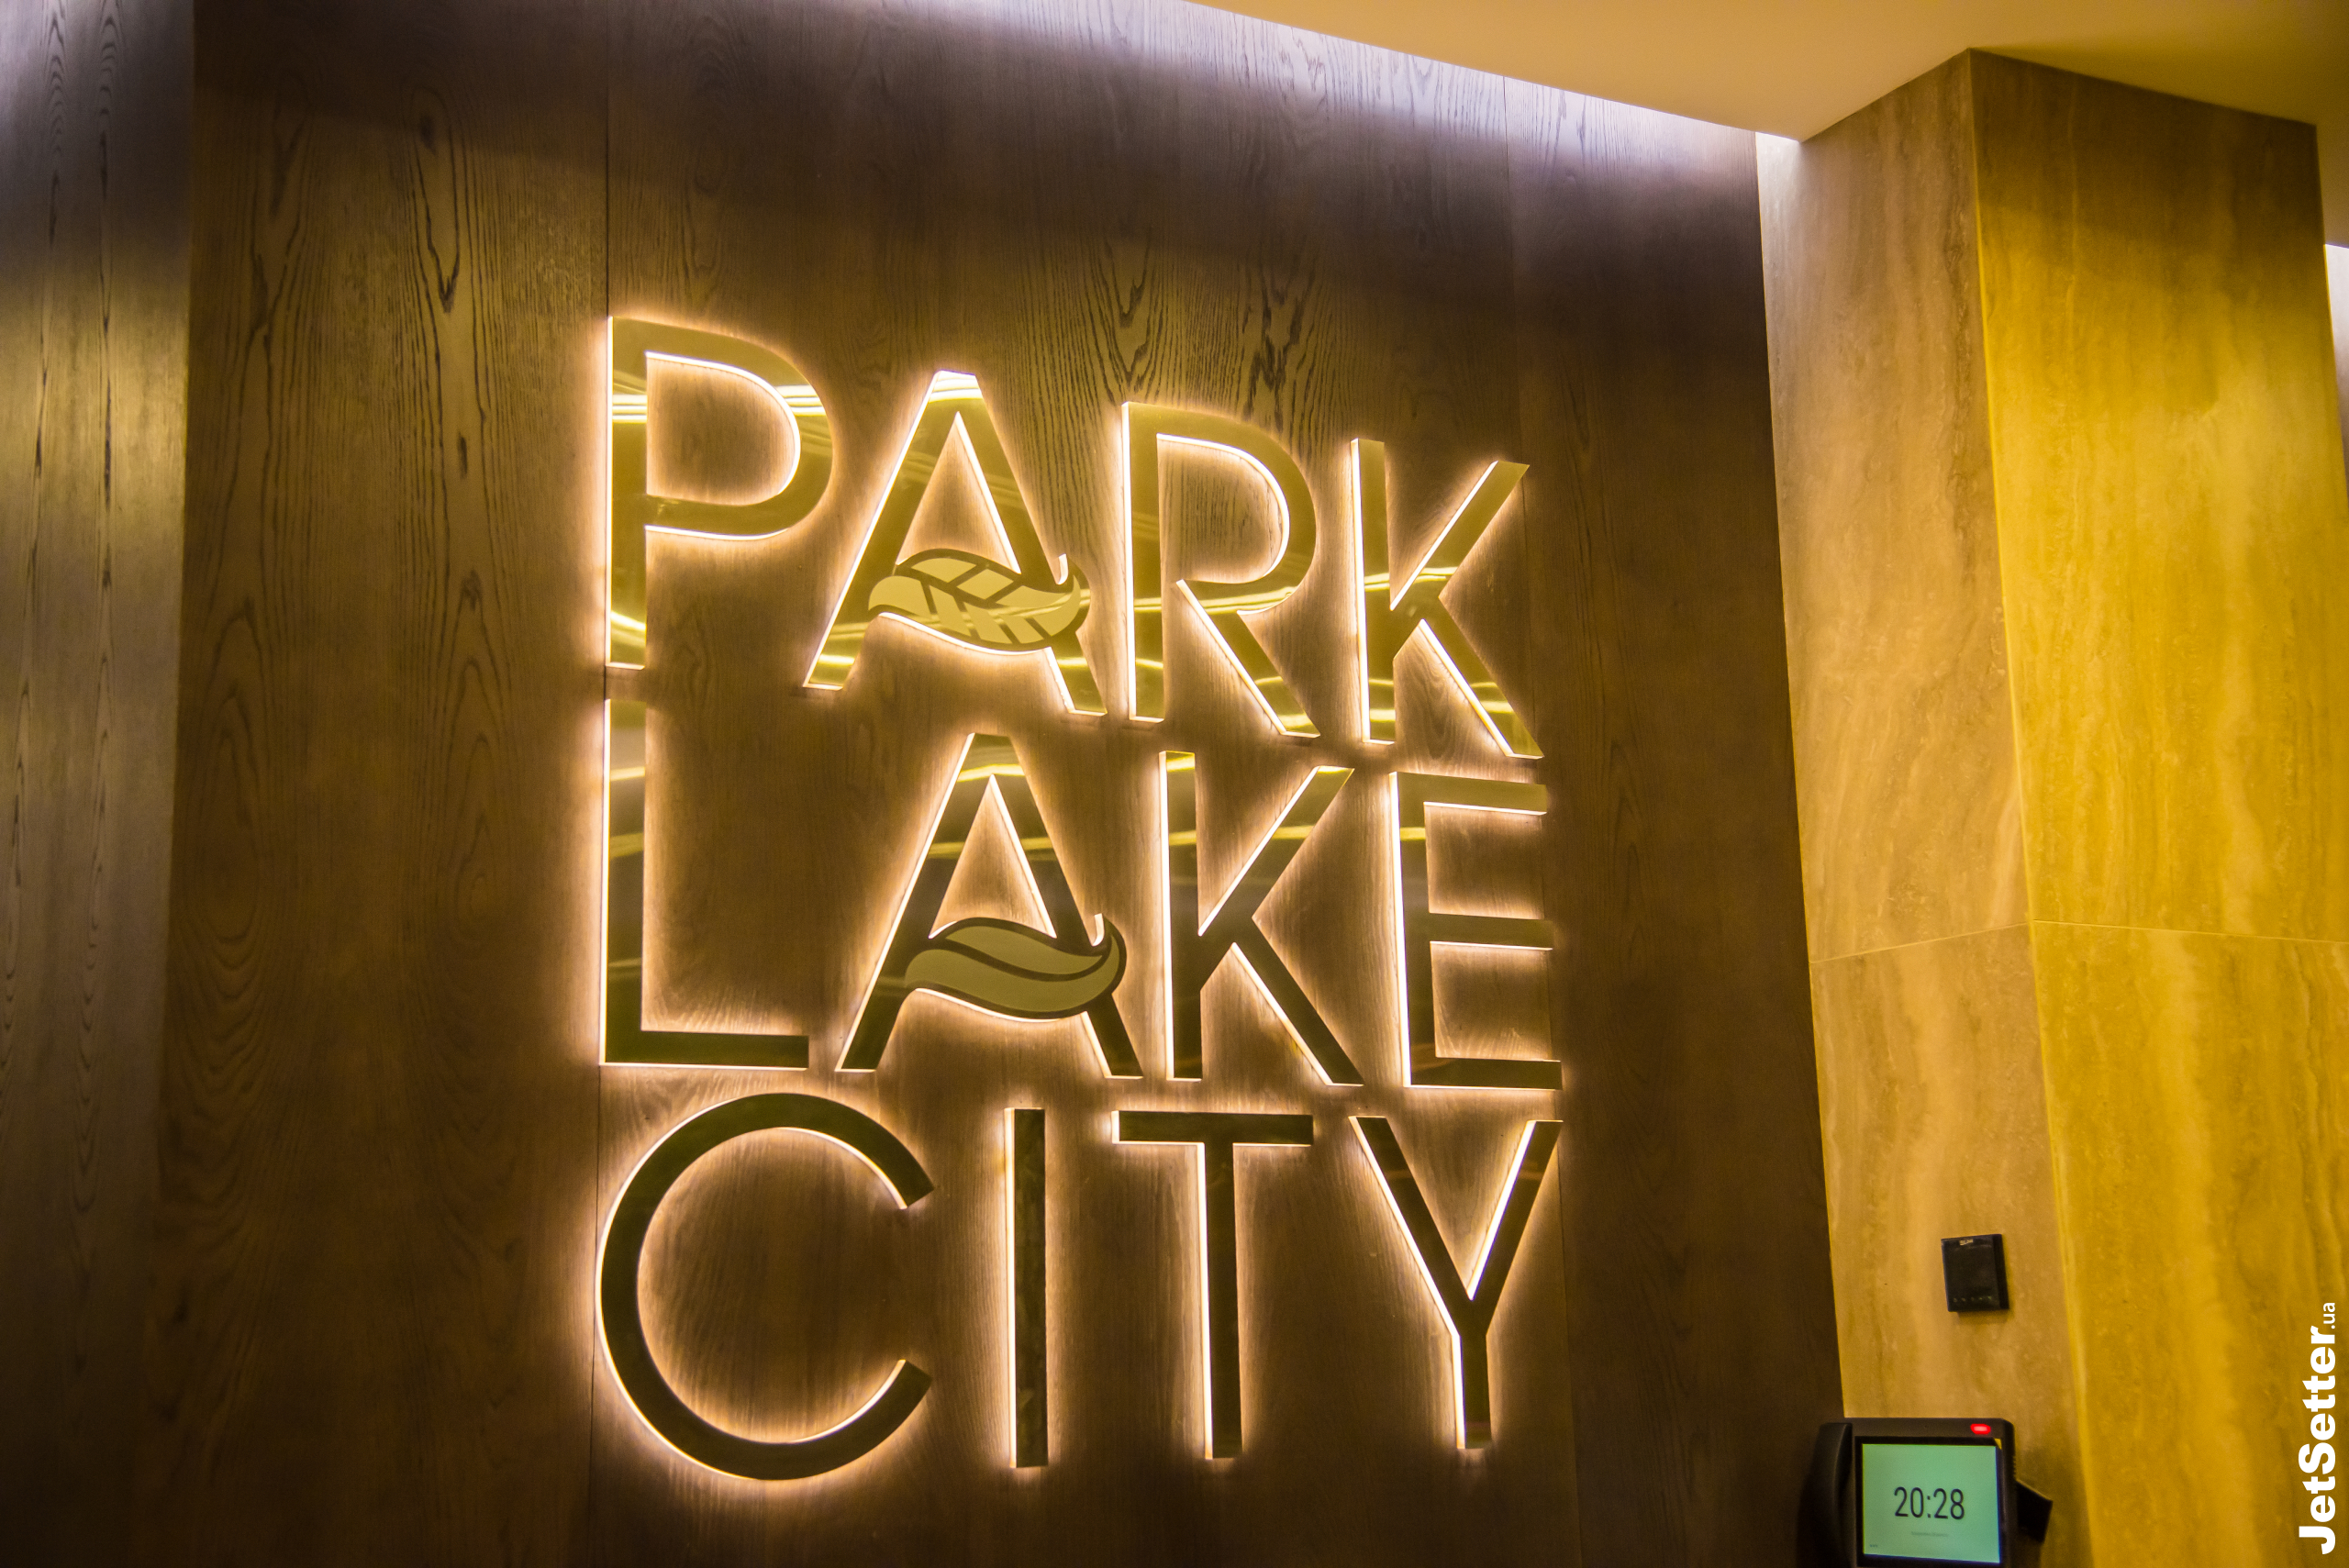 Інвестори Park Lake City отримали ключі від своїх квартир і систему «розумний будинок» у подарунок